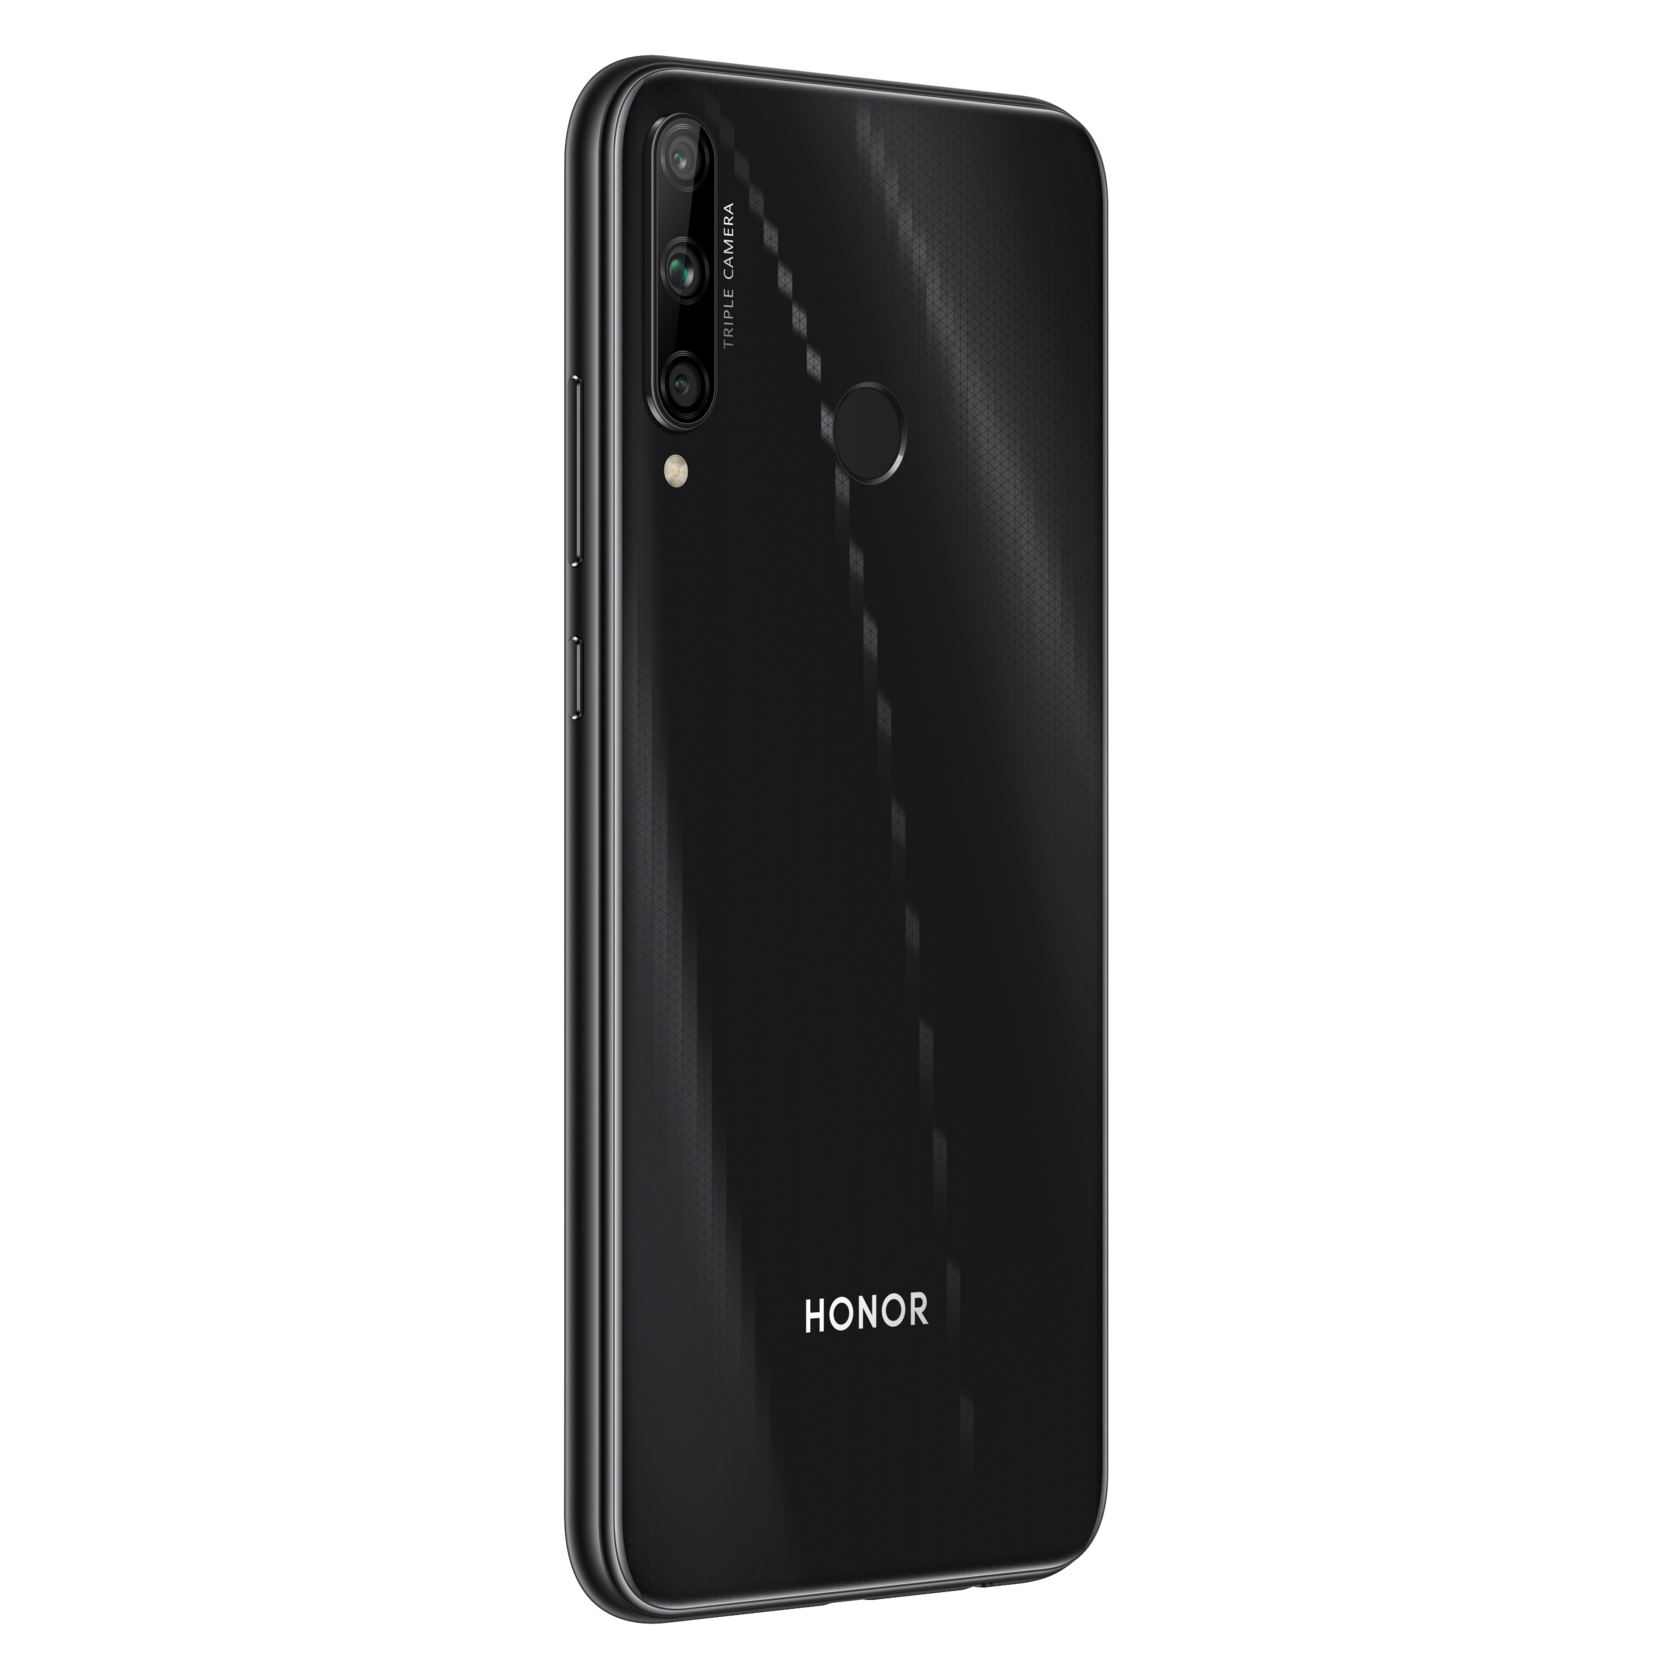 Honor mobile phone. Смартфон Honor 9c 4/64gb Black. Смартфон Honor 9c 64 ГБ. Смартфон Honor 9c 64gb Black. Смартфон Honor 9a 64 ГБ черный.